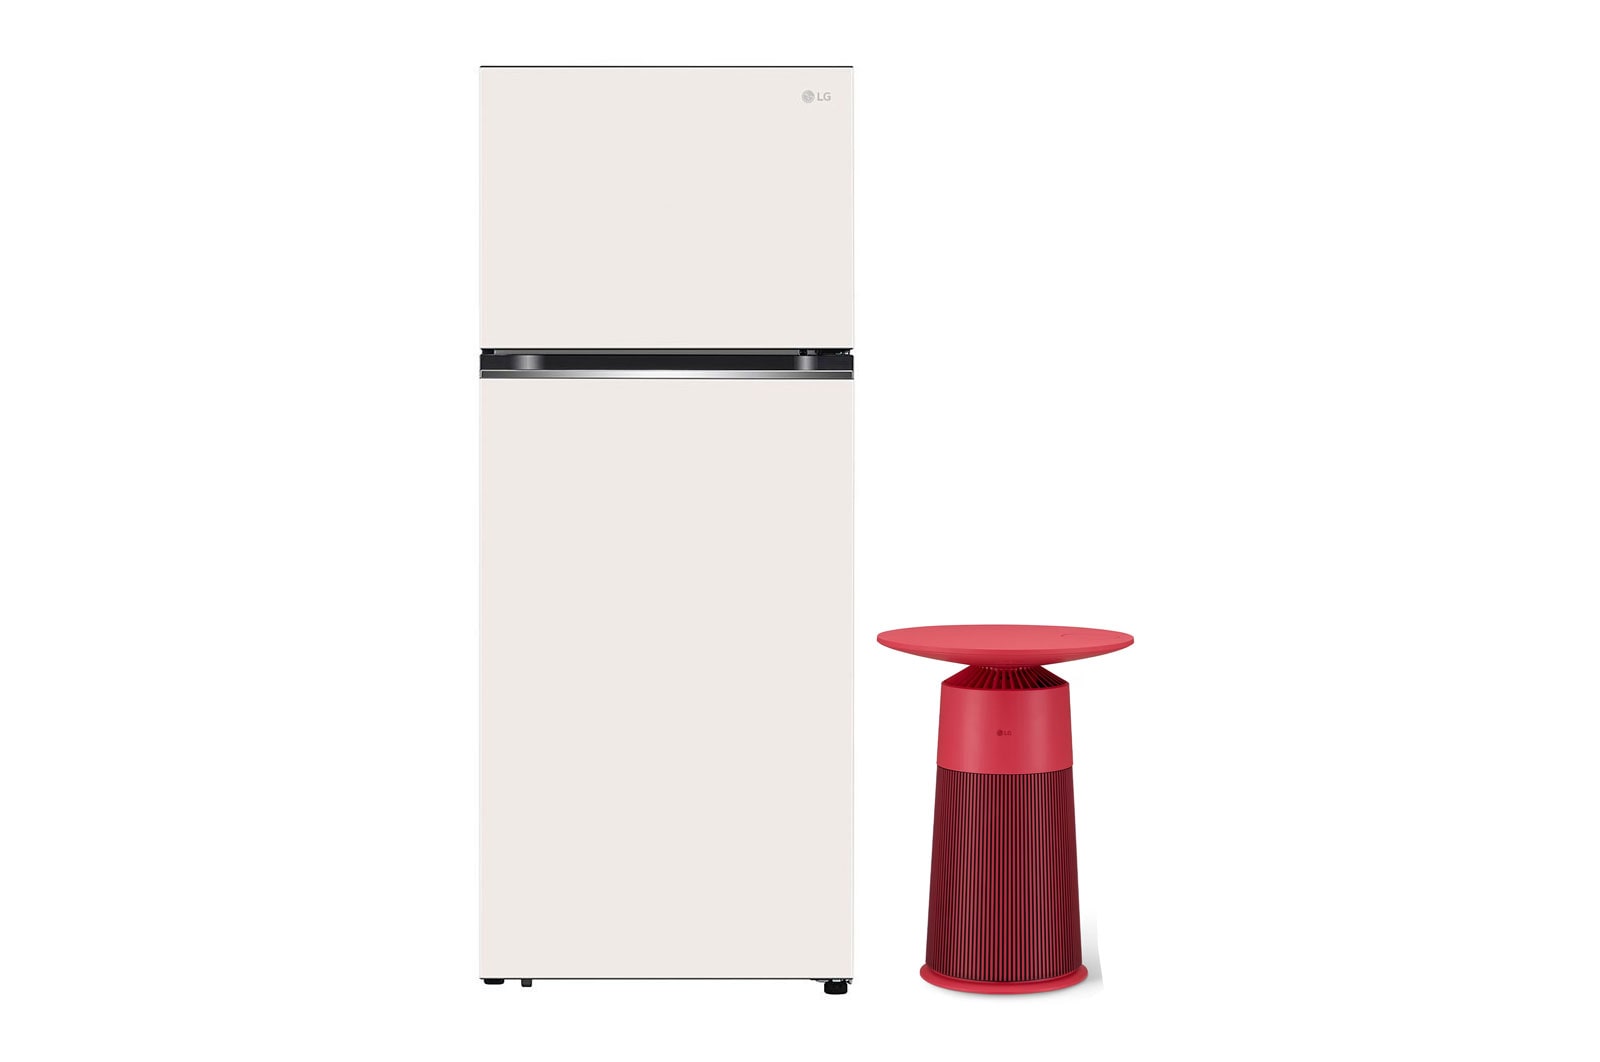 LG Combo Tủ lạnh LG ngăn đá trên Smart Inverter™ với công nghệ DoorCooling+™ 395L màu be GN-B392BG & Máy lọc khí PuriCare AeroFurniture màu đỏ hồng, GNB392AS20R.ABAE